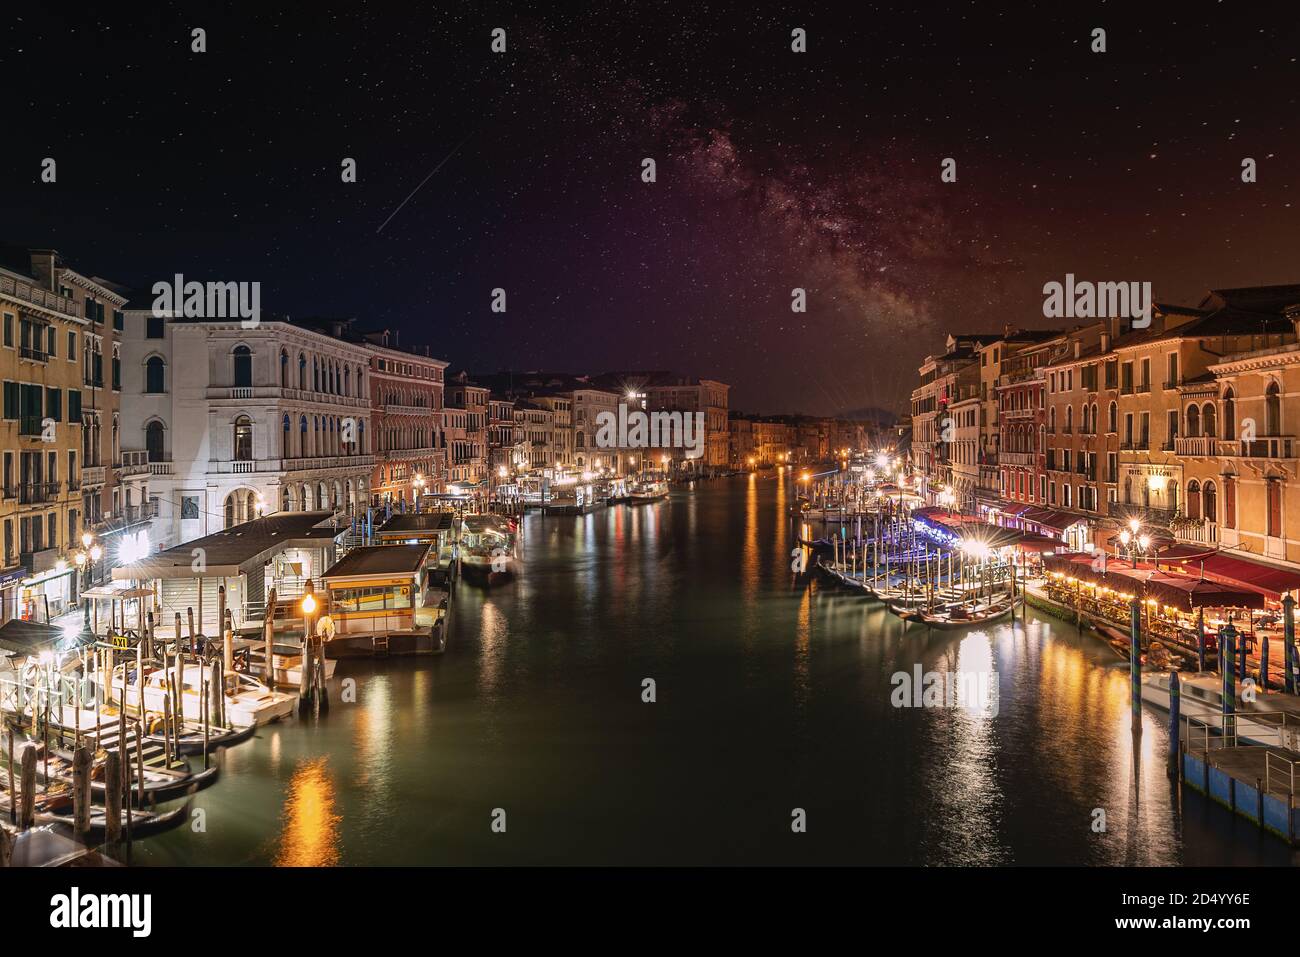 Venise, Italie. 8 octobre 2020. Vue panoramique nocturne sur le grand canal depuis le pont du Rialto avec la voie laiteuse dans le ciel. Banque D'Images